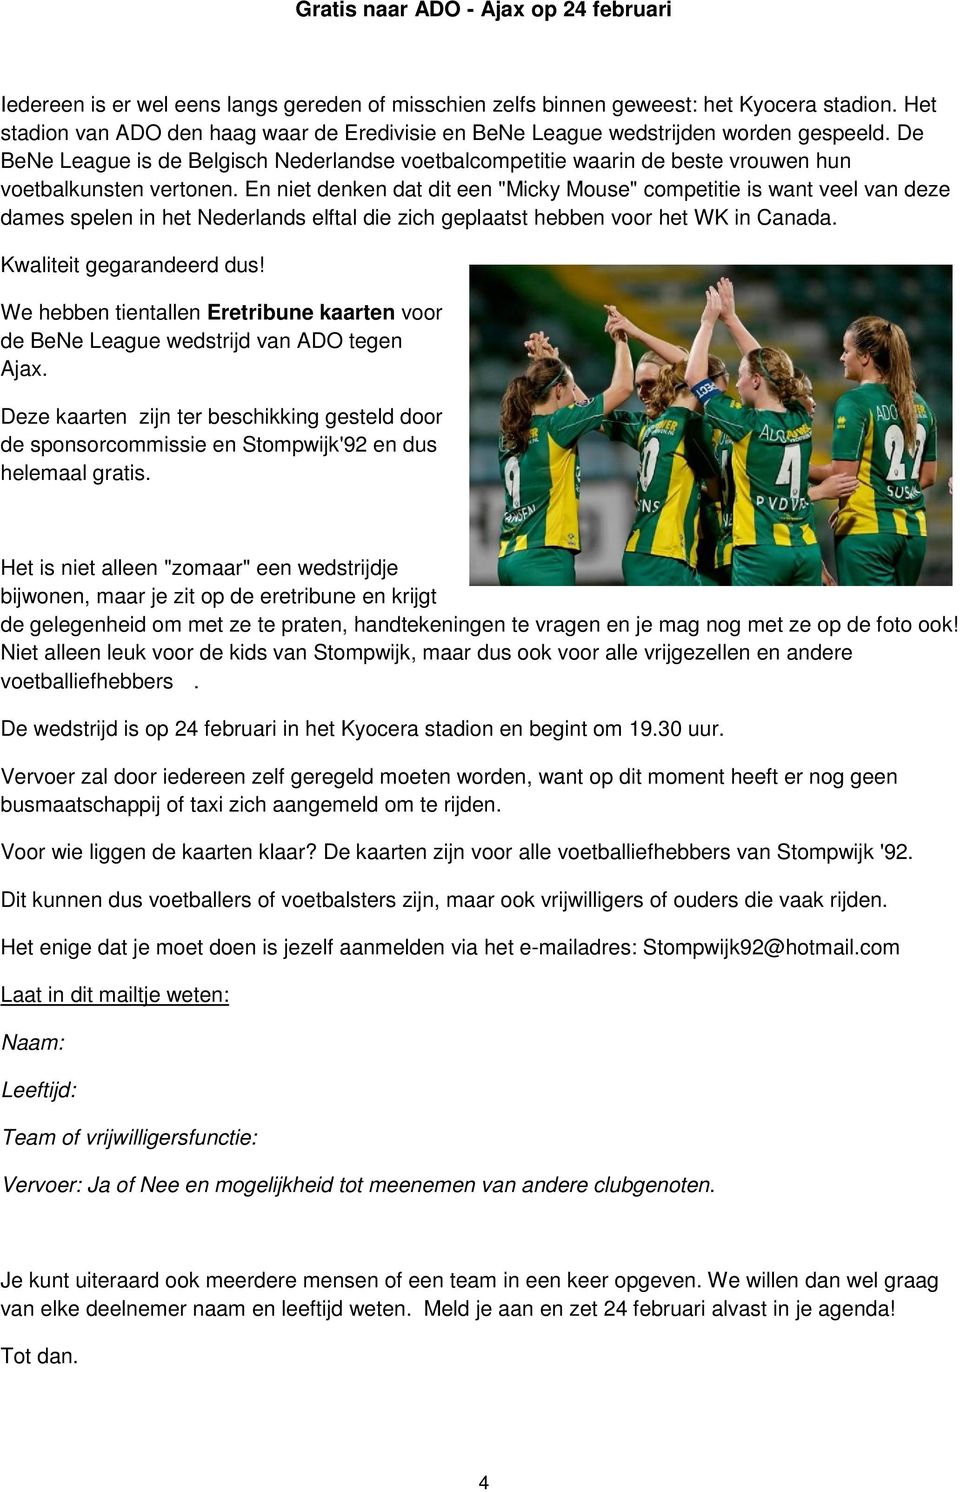 De BeNe League is de Belgisch Nederlandse voetbalcompetitie waarin de beste vrouwen hun voetbalkunsten vertonen.